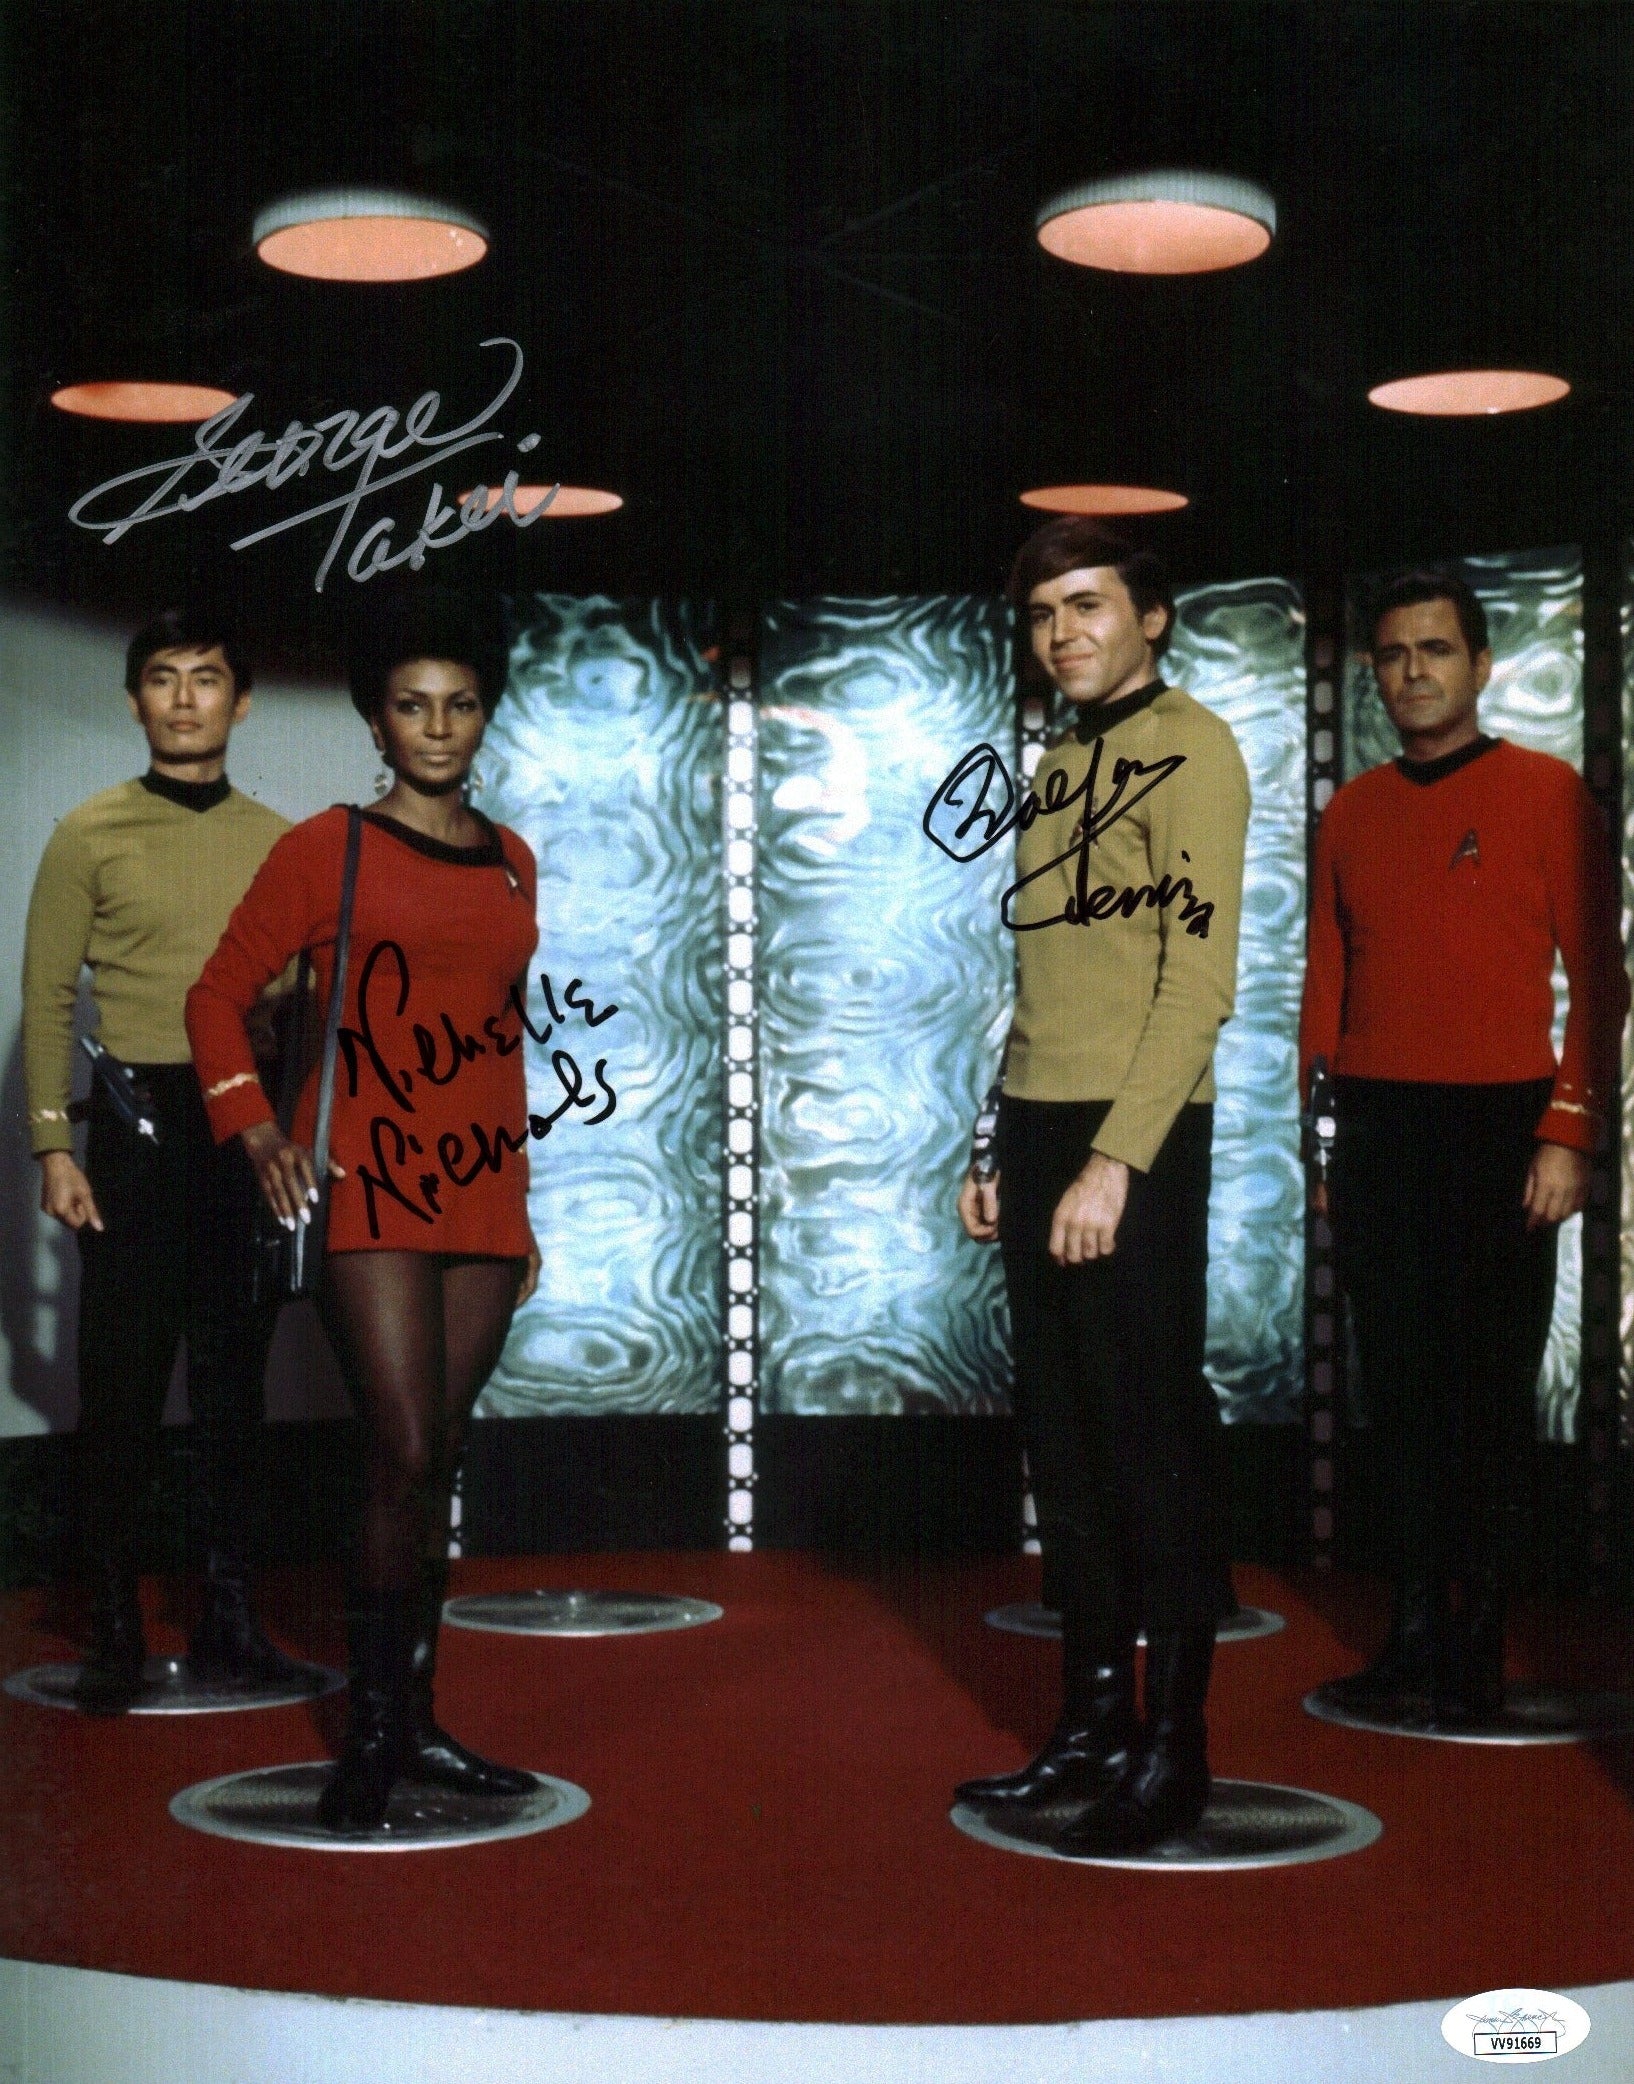 Star Trek 11x14 Mini Poster Cast x3 Signed Koenig Nichols Takei JSA Certified Autograph